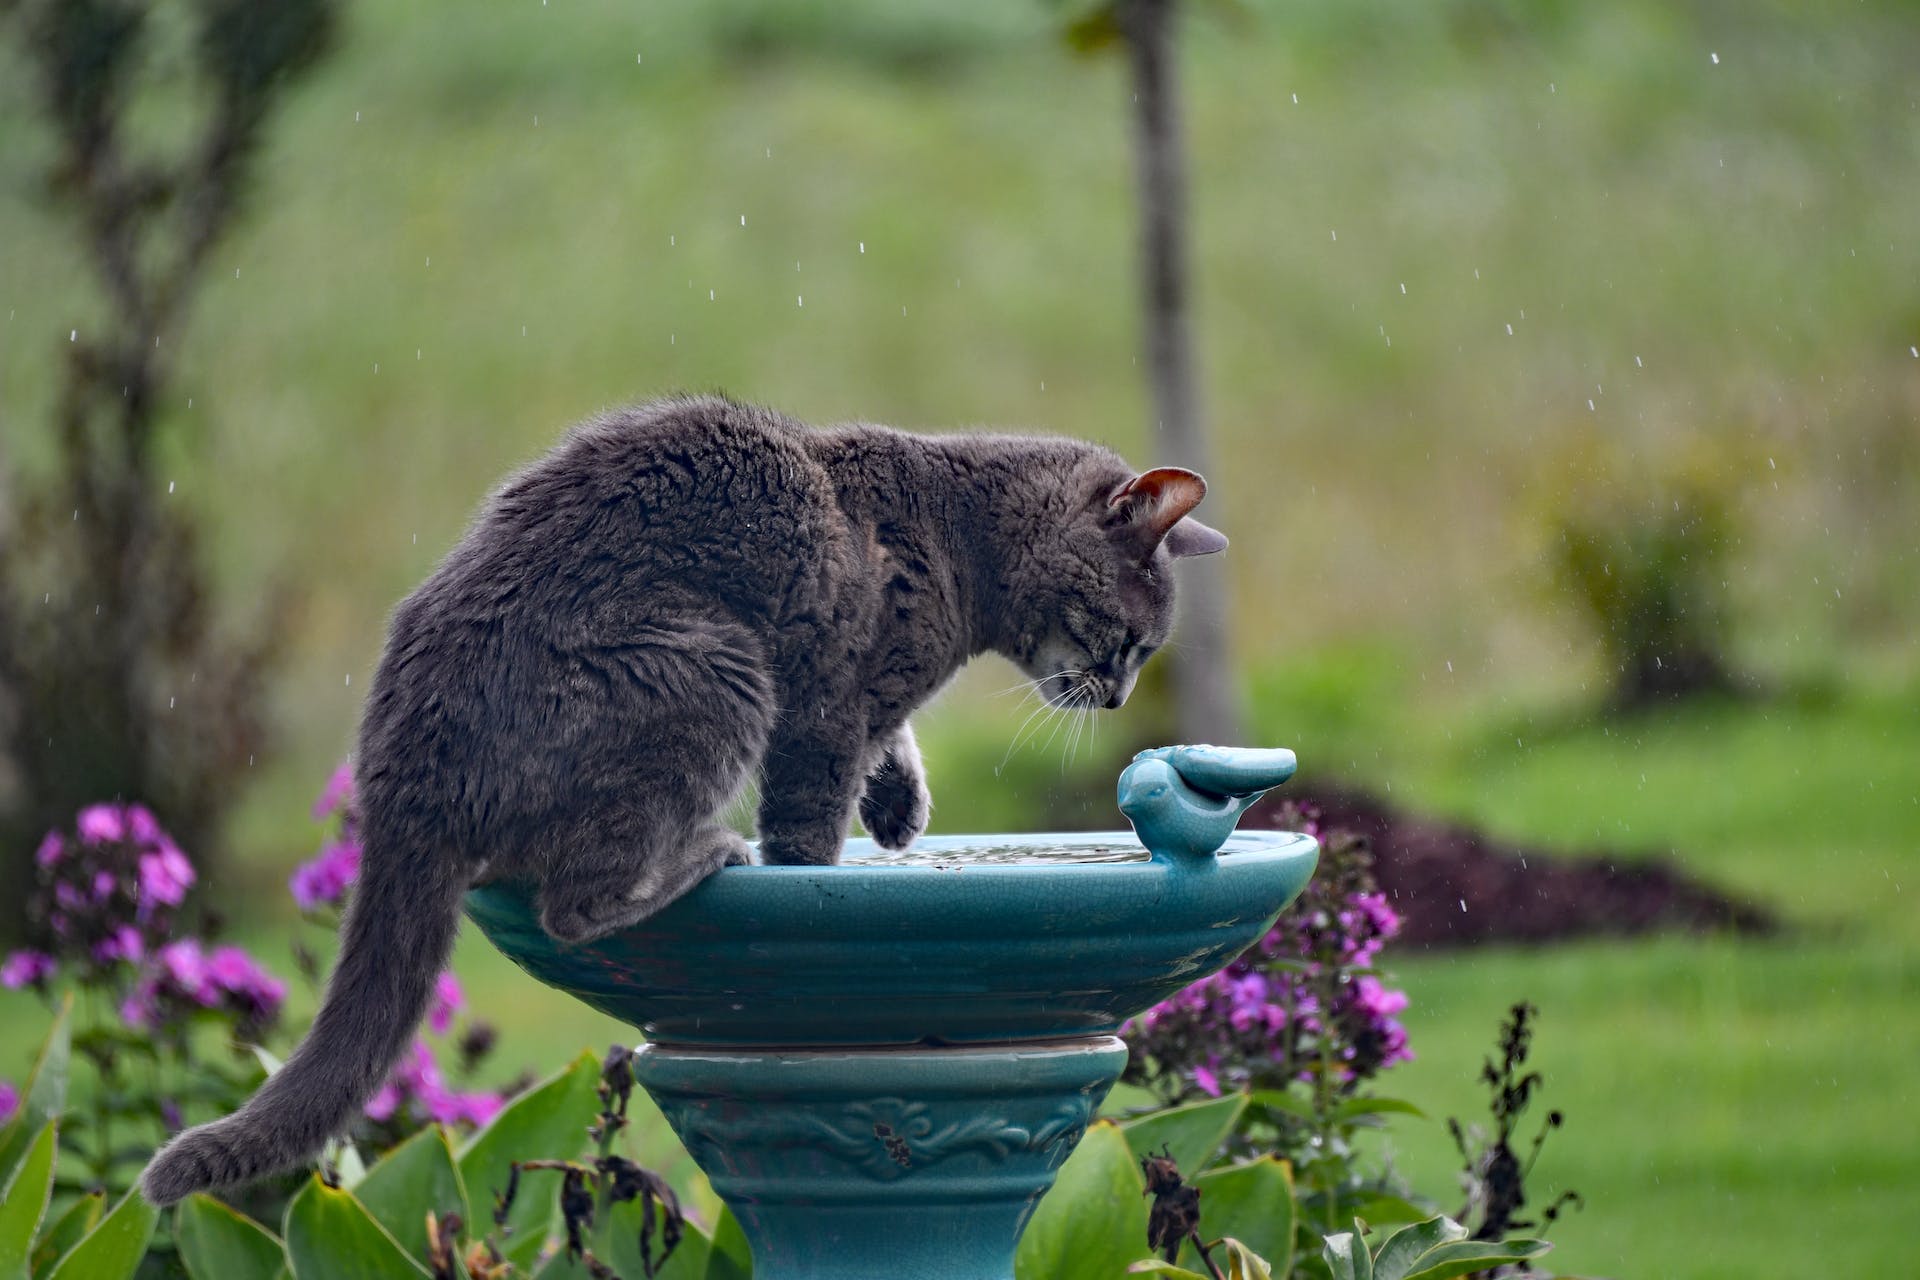 A cat perching on a bird bath in a garden